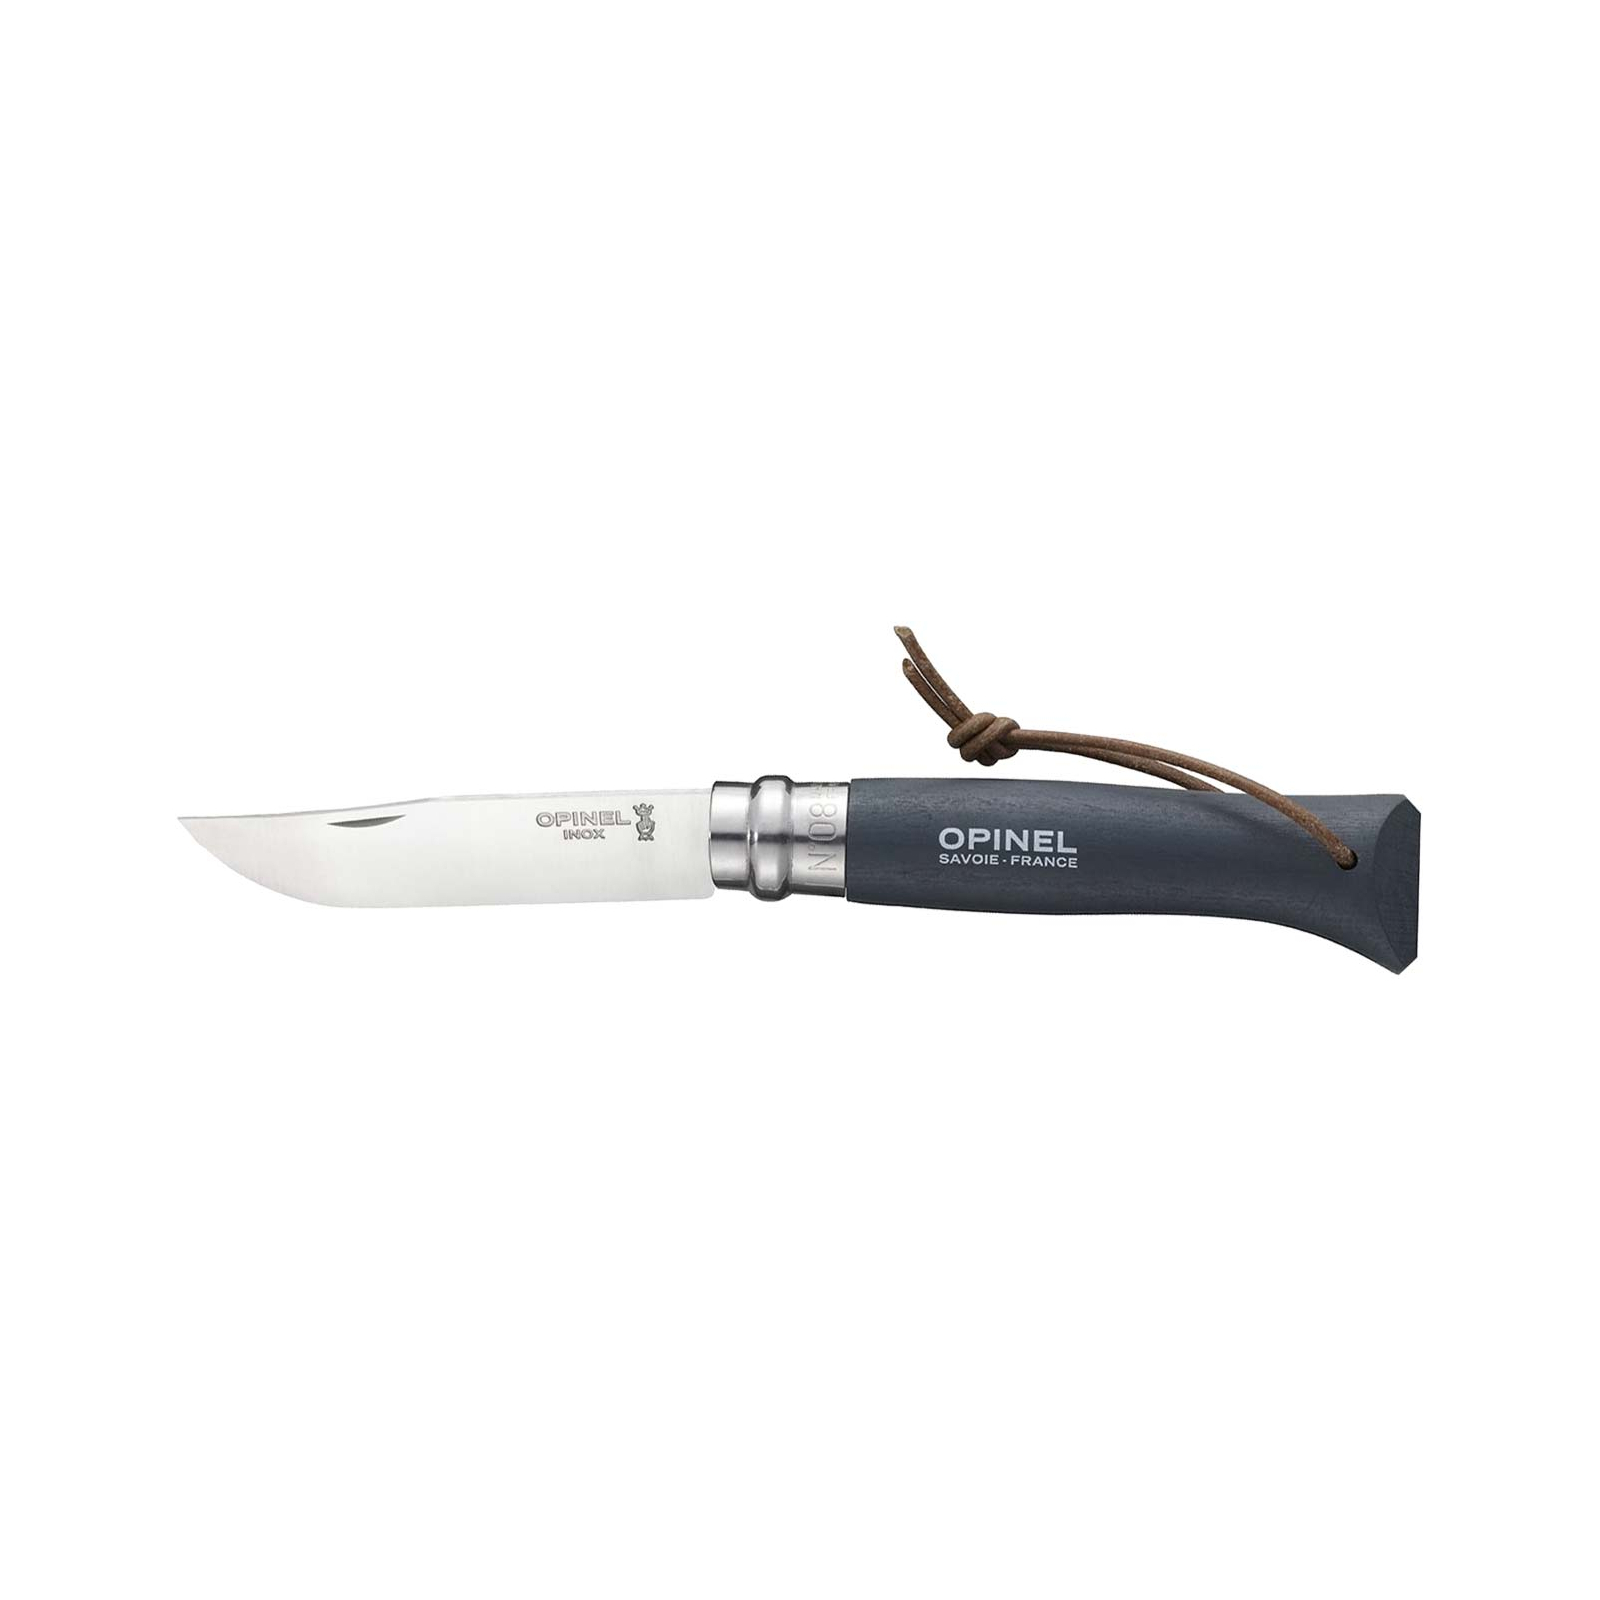 Нож Opinel №8 Inox VRI Trekking (1321)